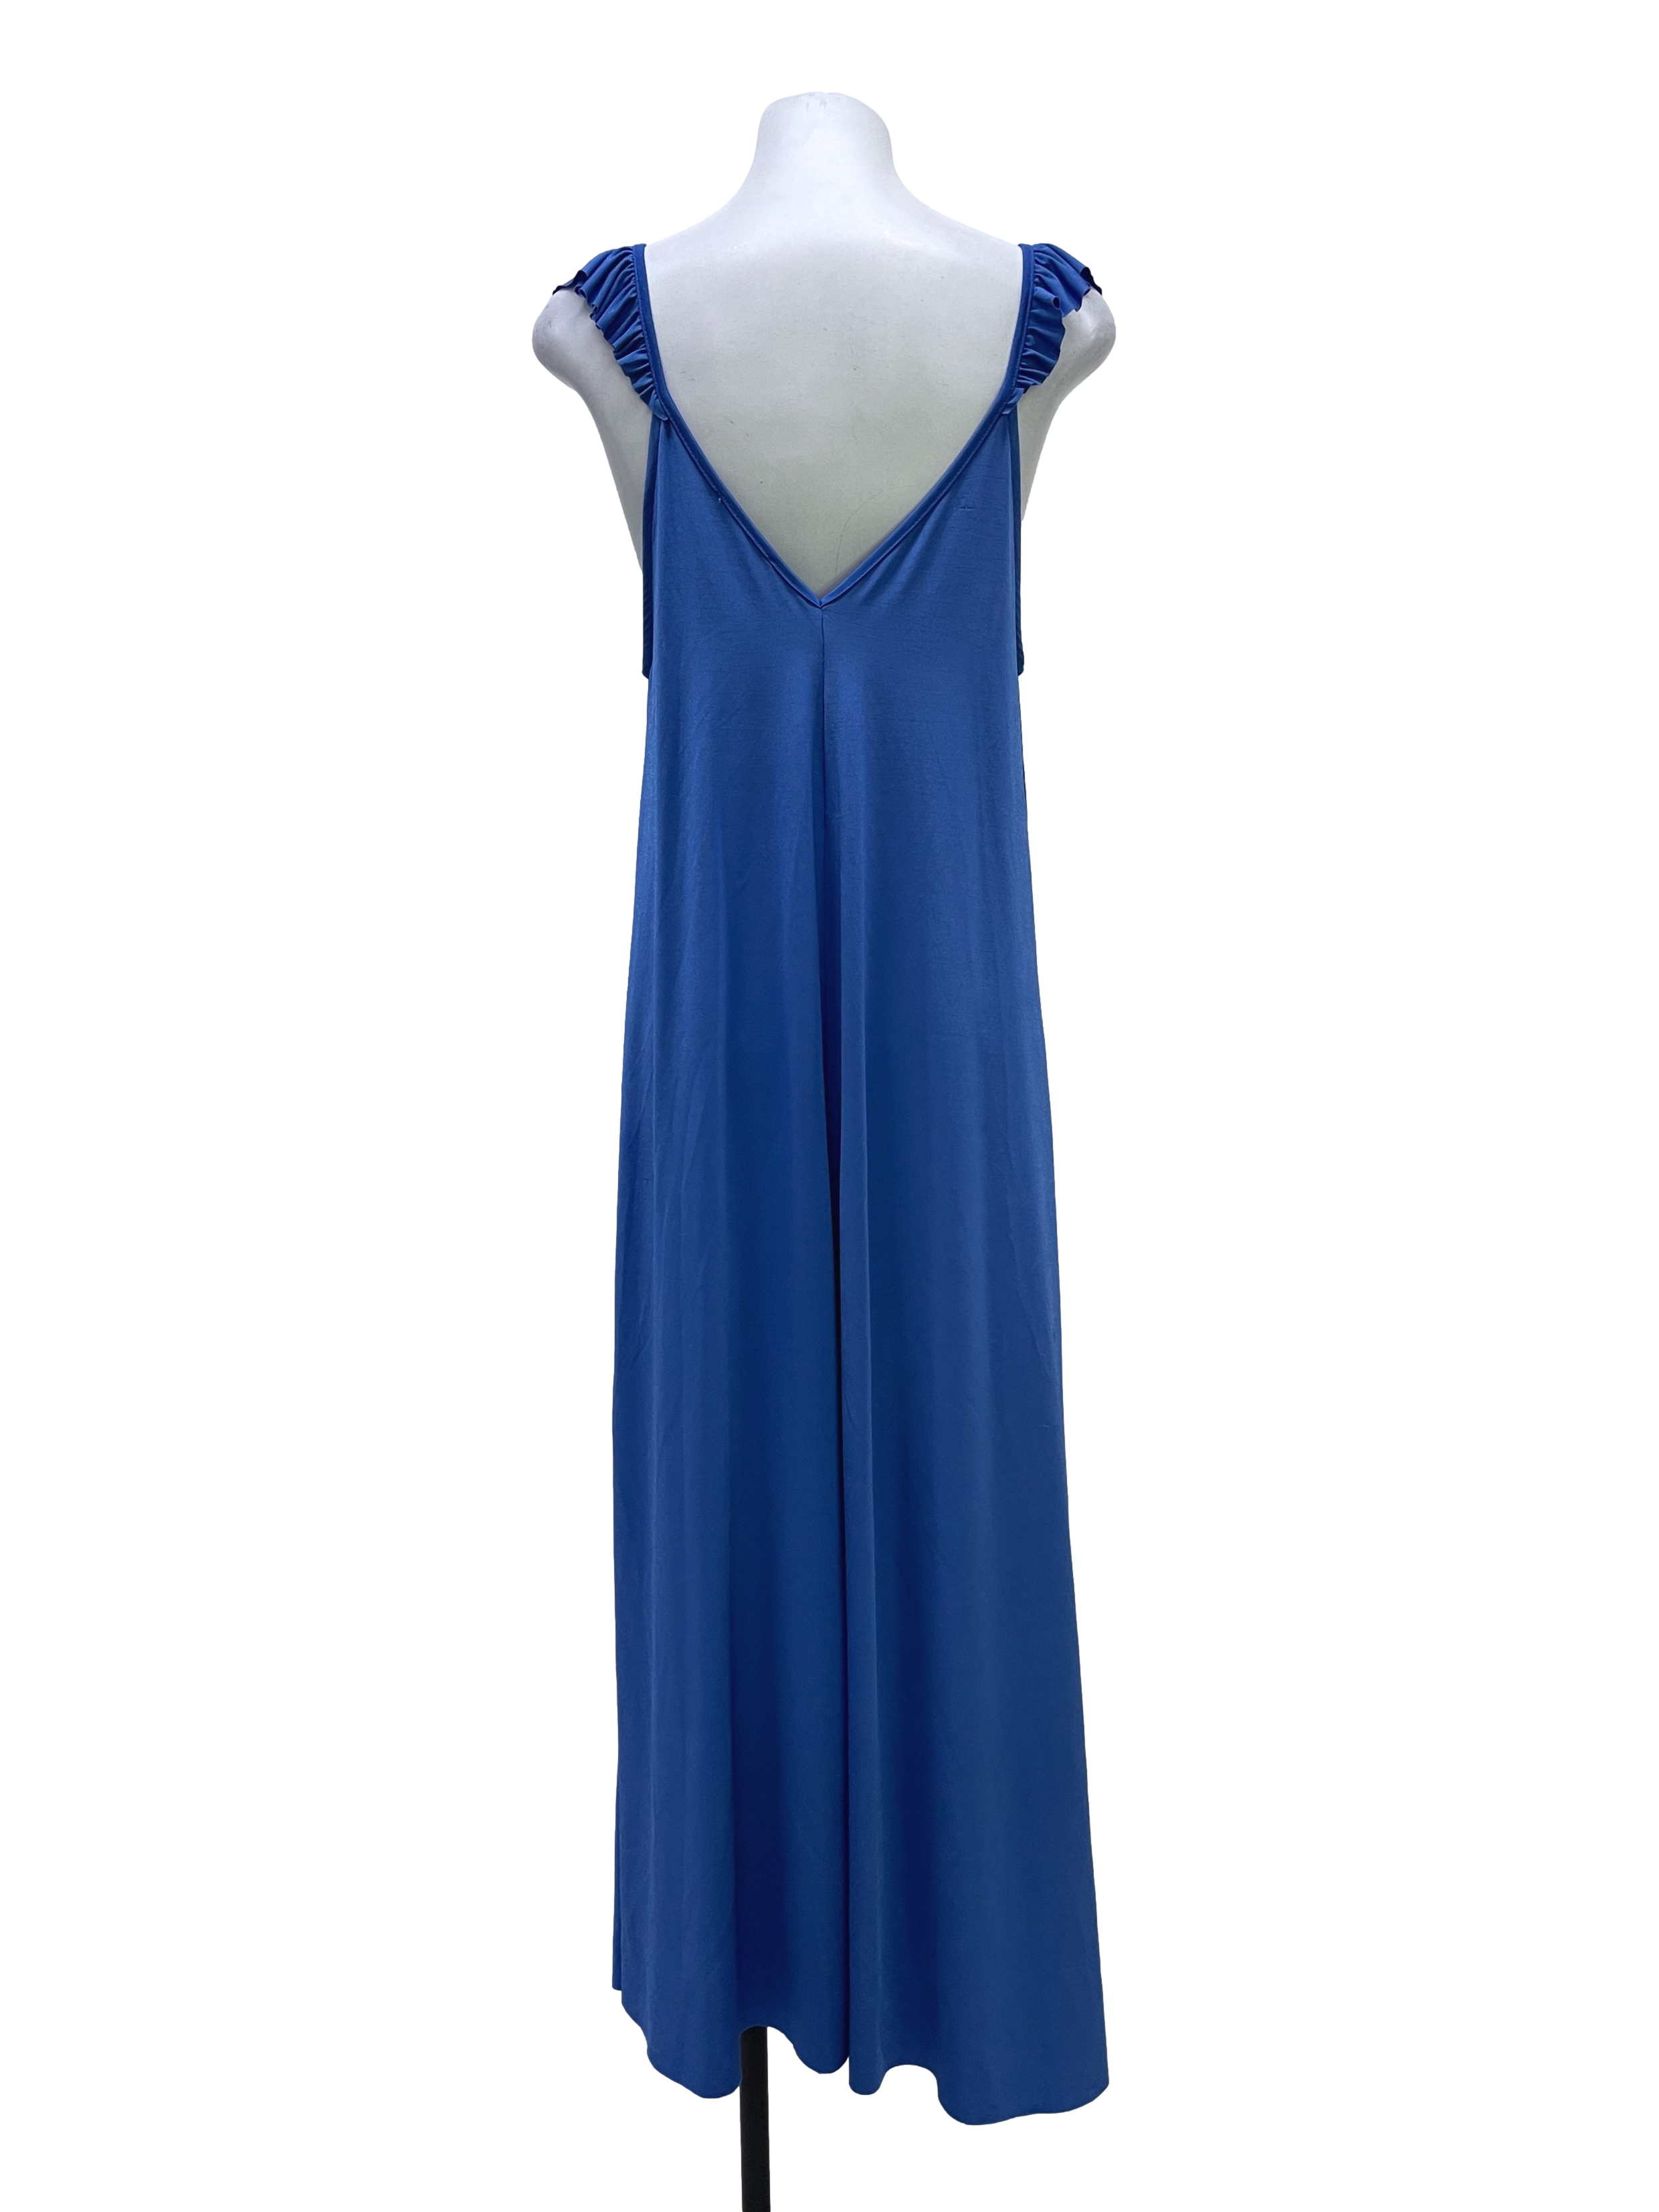 Blue Jersey Dress